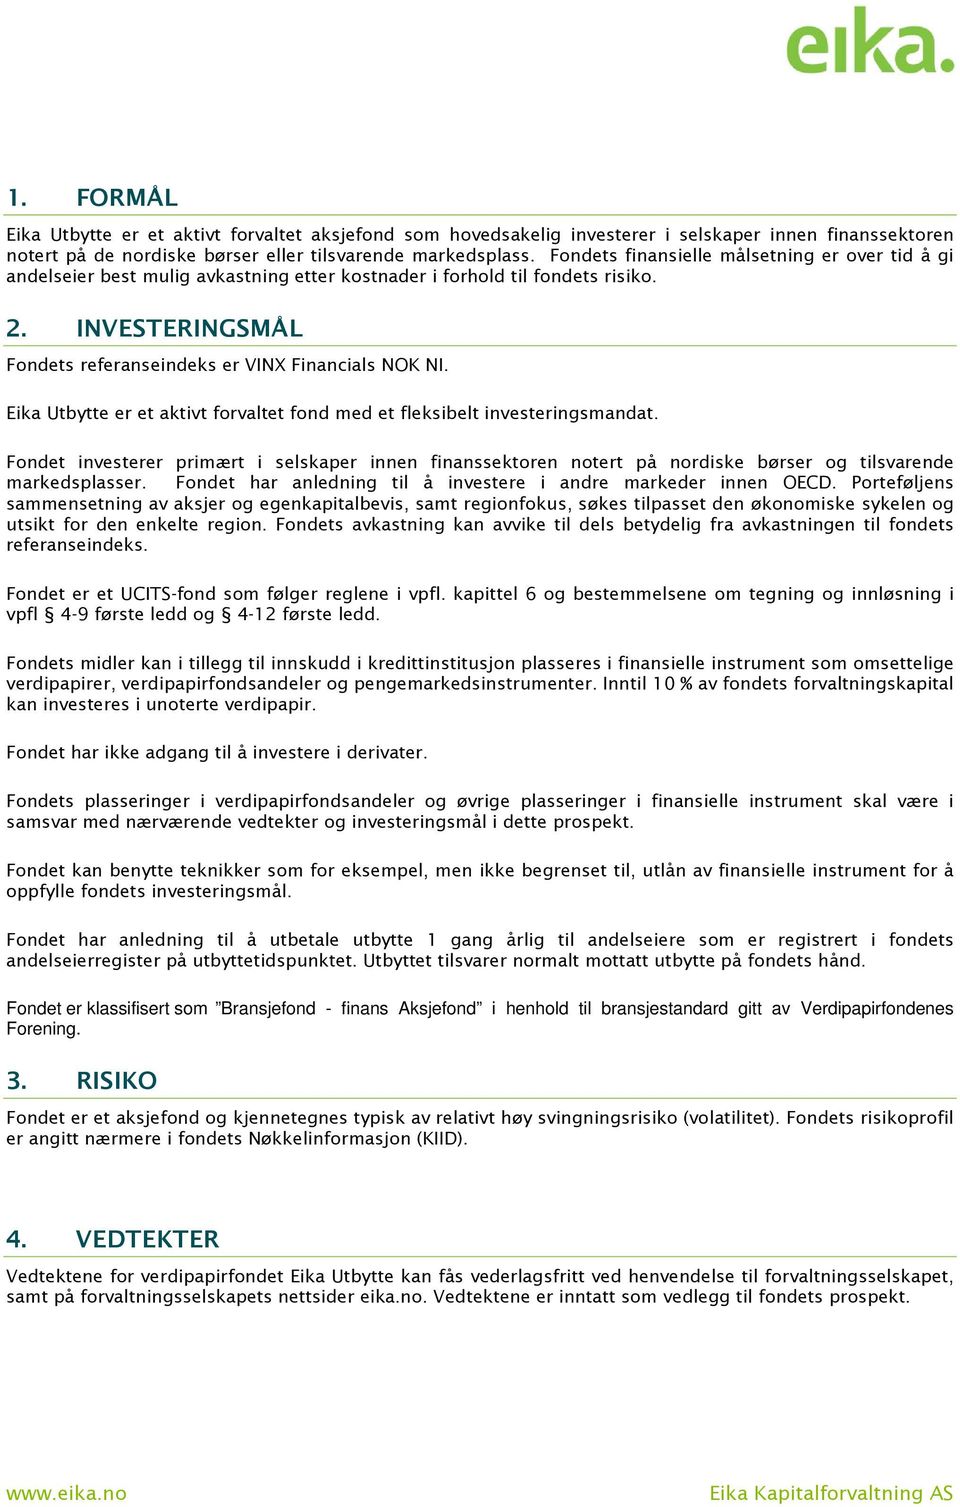 Eika Utbytte er et aktivt forvaltet fond med et fleksibelt investeringsmandat. Fondet investerer primært i selskaper innen finanssektoren notert på nordiske børser og tilsvarende markedsplasser.